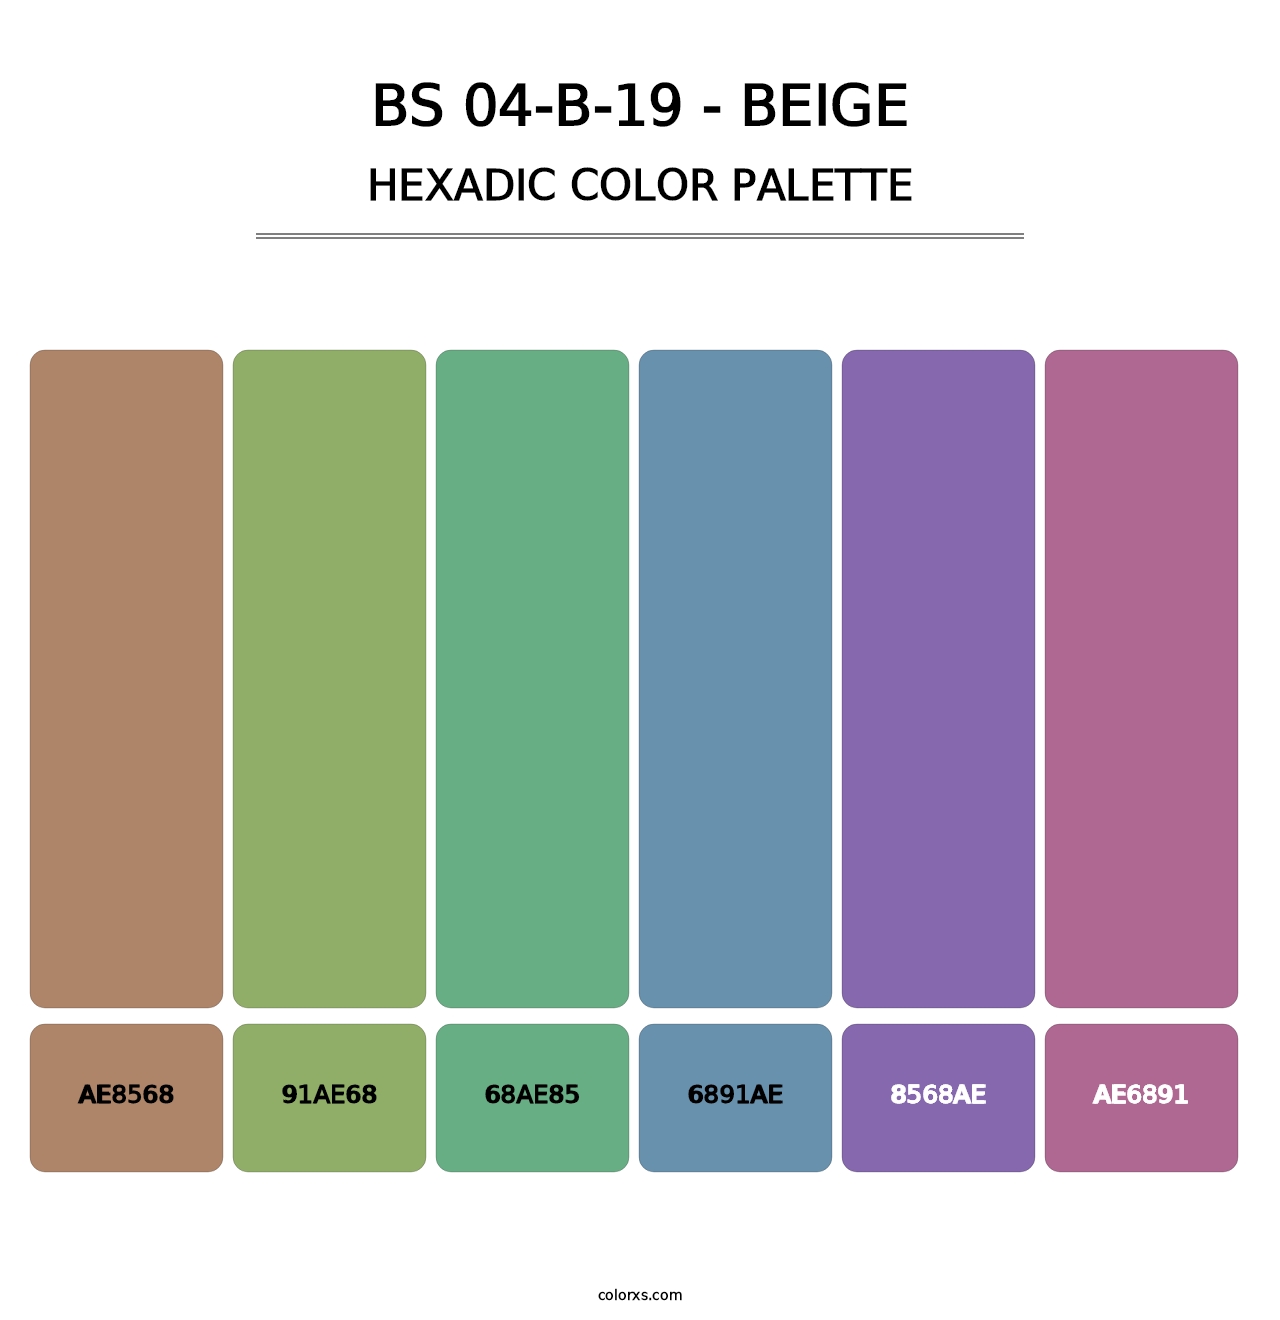 BS 04-B-19 - Beige - Hexadic Color Palette